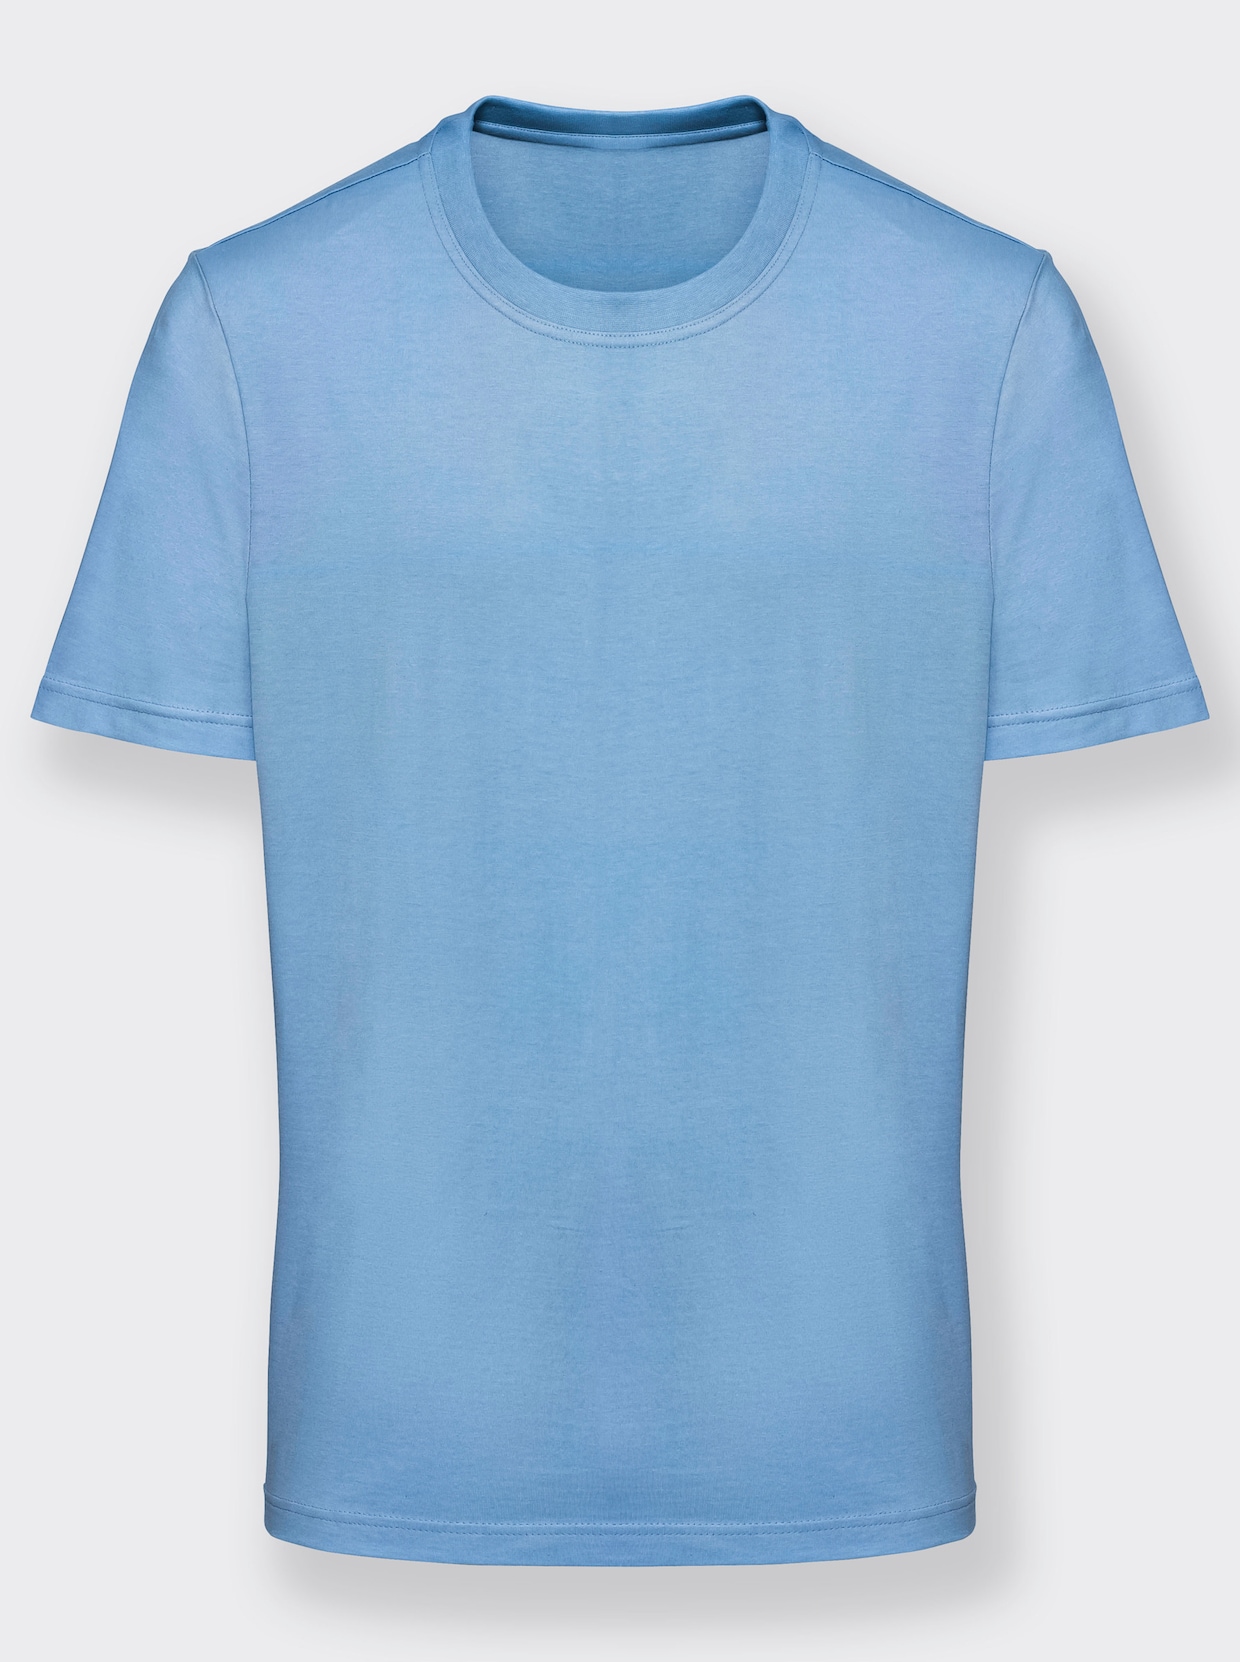 KINGsCLUB Shirt - antraciet + blauw + wit